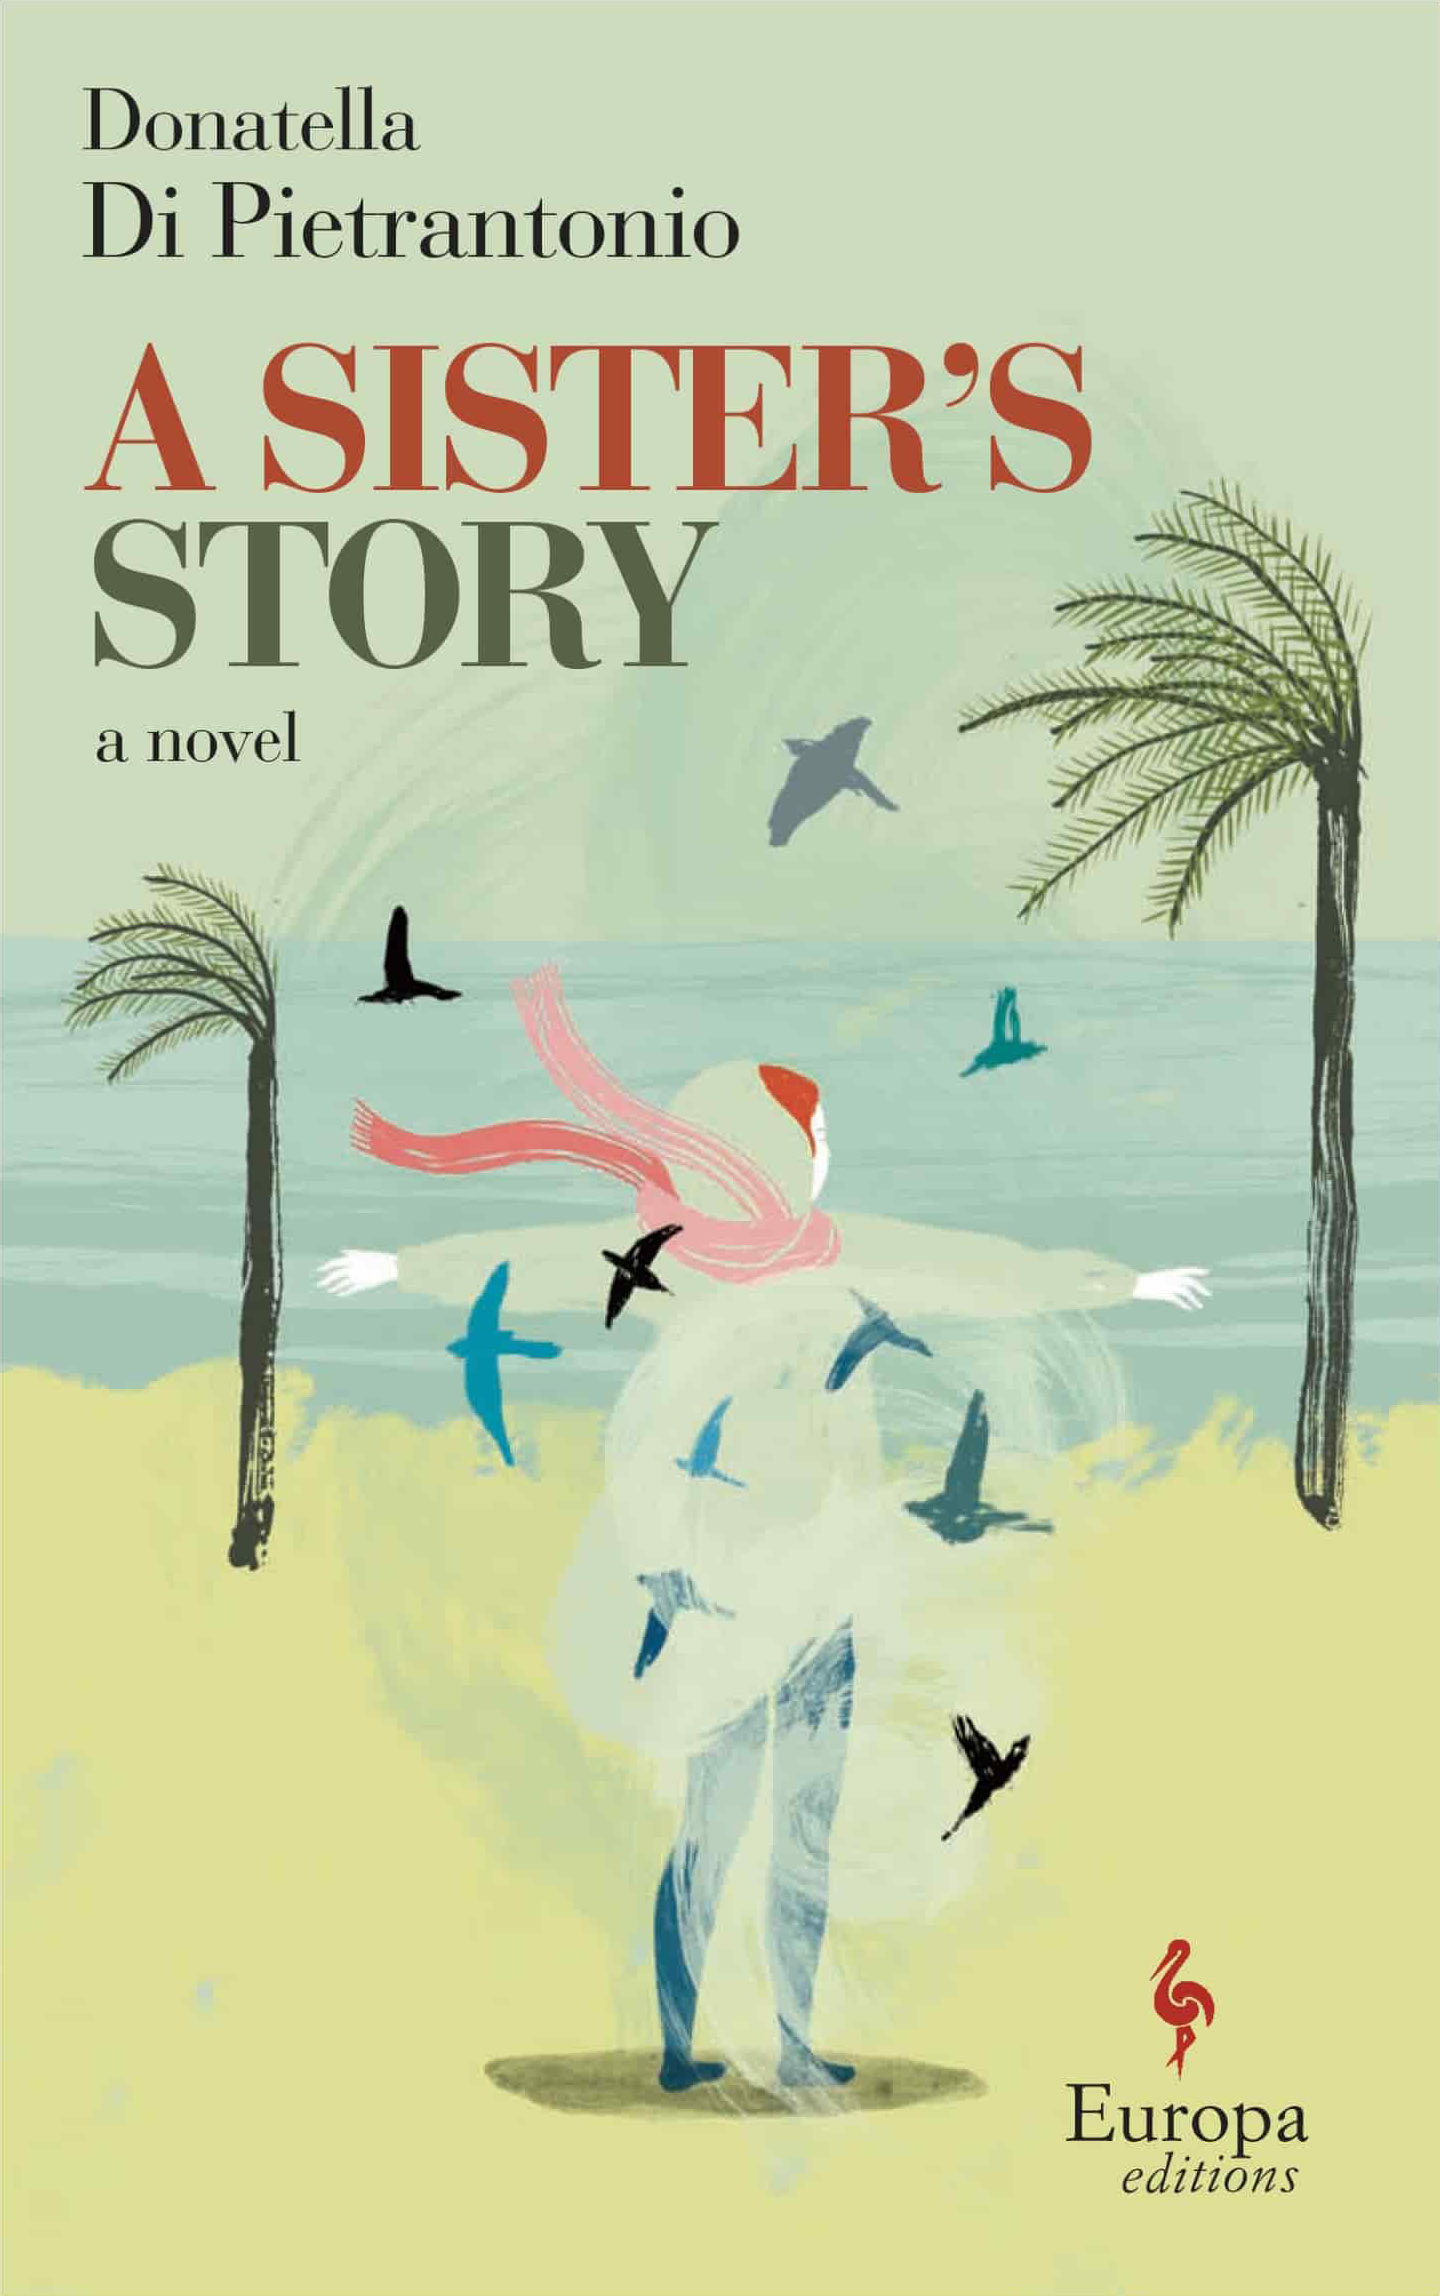 Cover of A Sister's Story by Donatella Di Pietrantonio